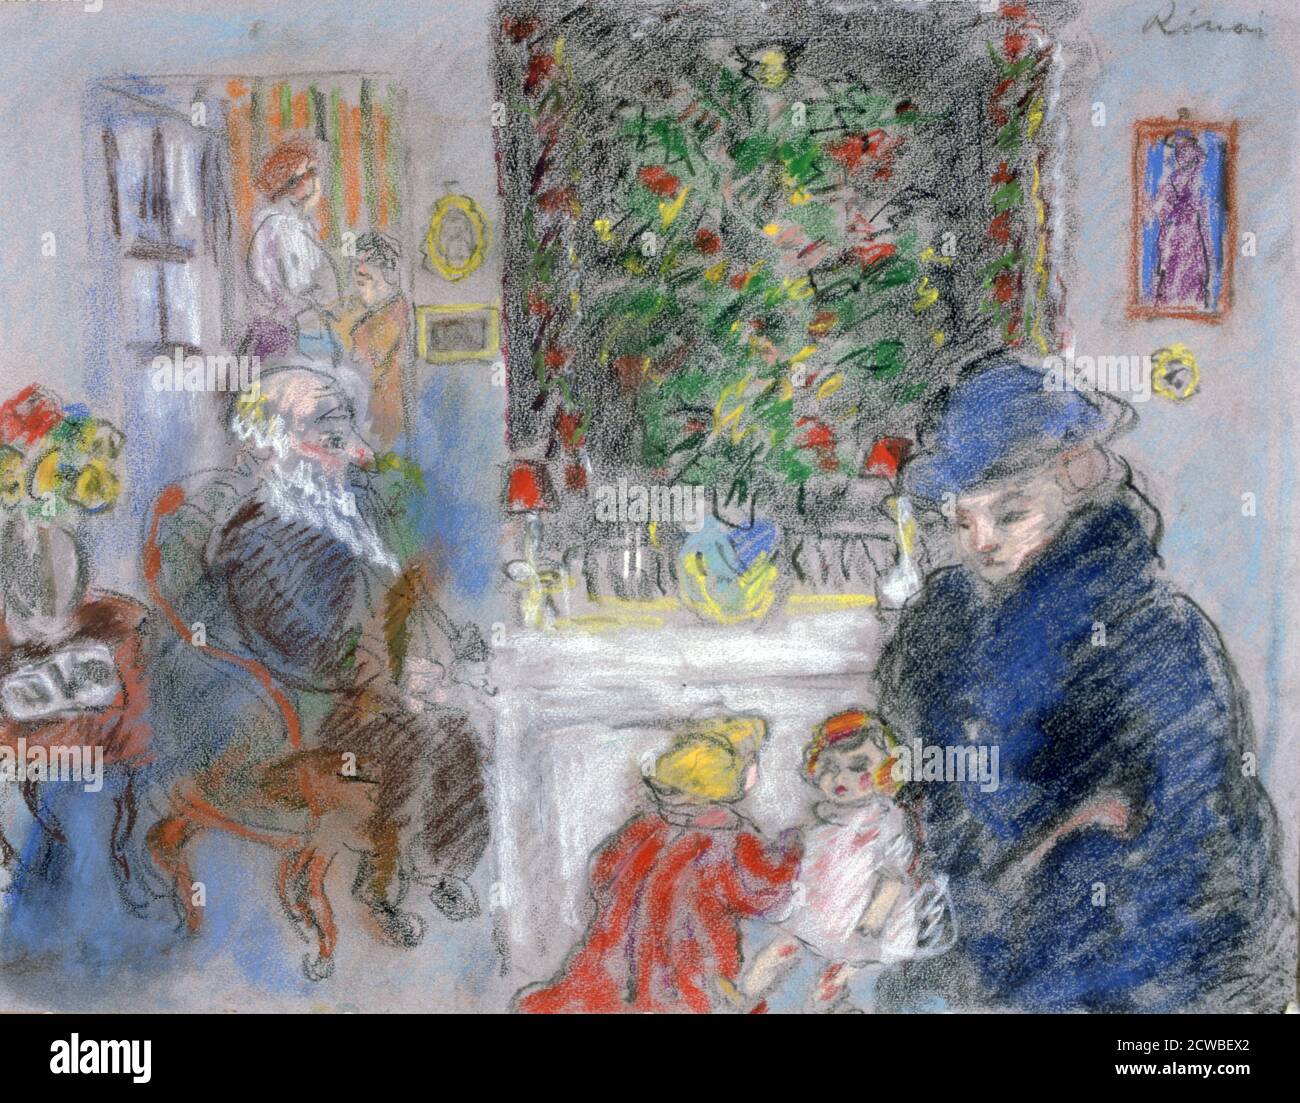 Weihnachten', c1881-1927. Künstler: Jozsef Rippl-Ronai. Jozsef Rippl-Ronai (1861-1927) war ein ungarischer Maler. Er führte zunächst moderne künstlerische Bewegungen in die ungarische Kunst ein Stockfoto